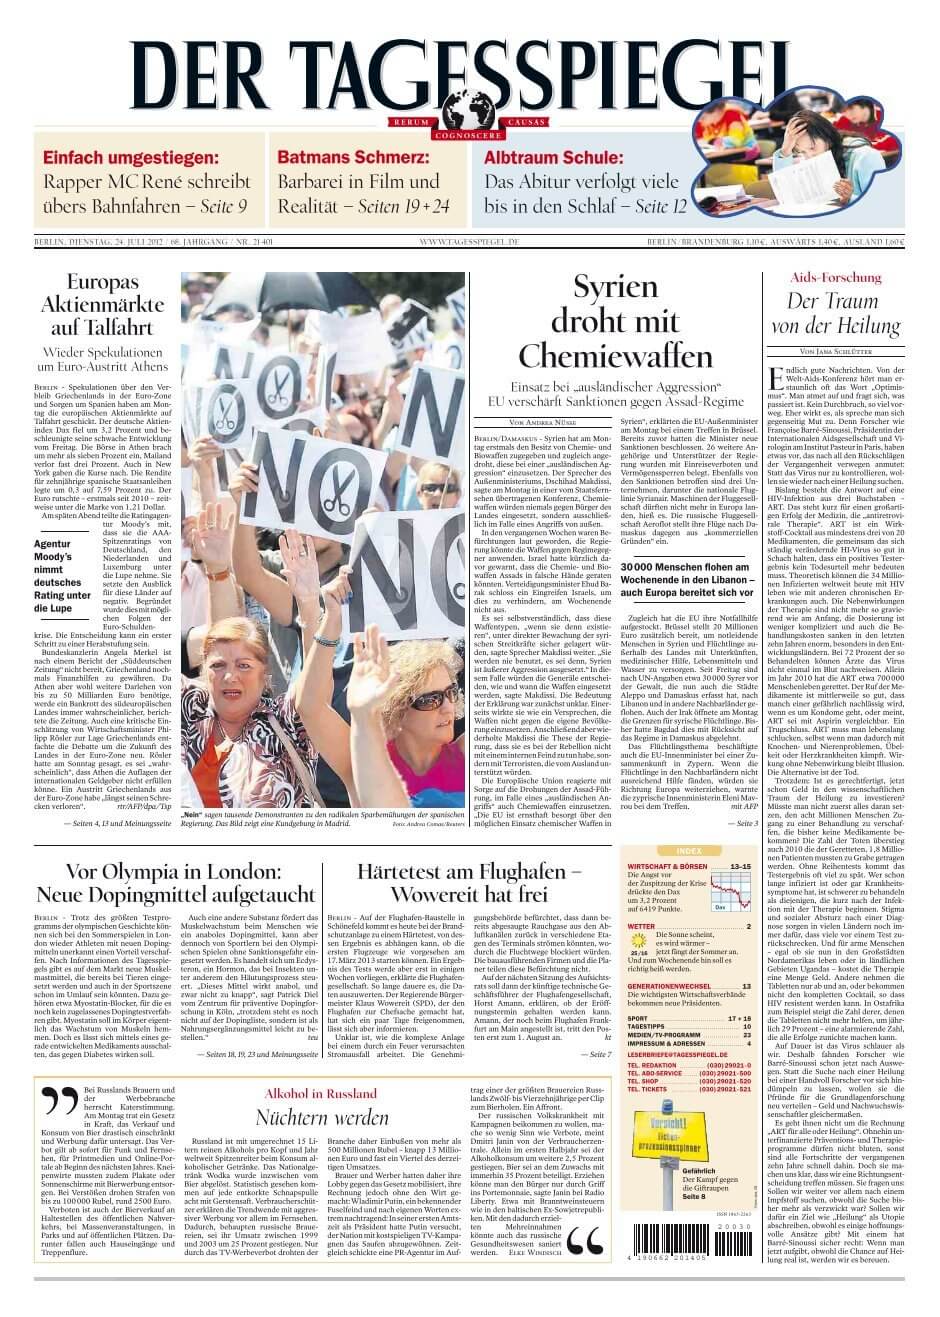 German 9 Der Tagesspiegel